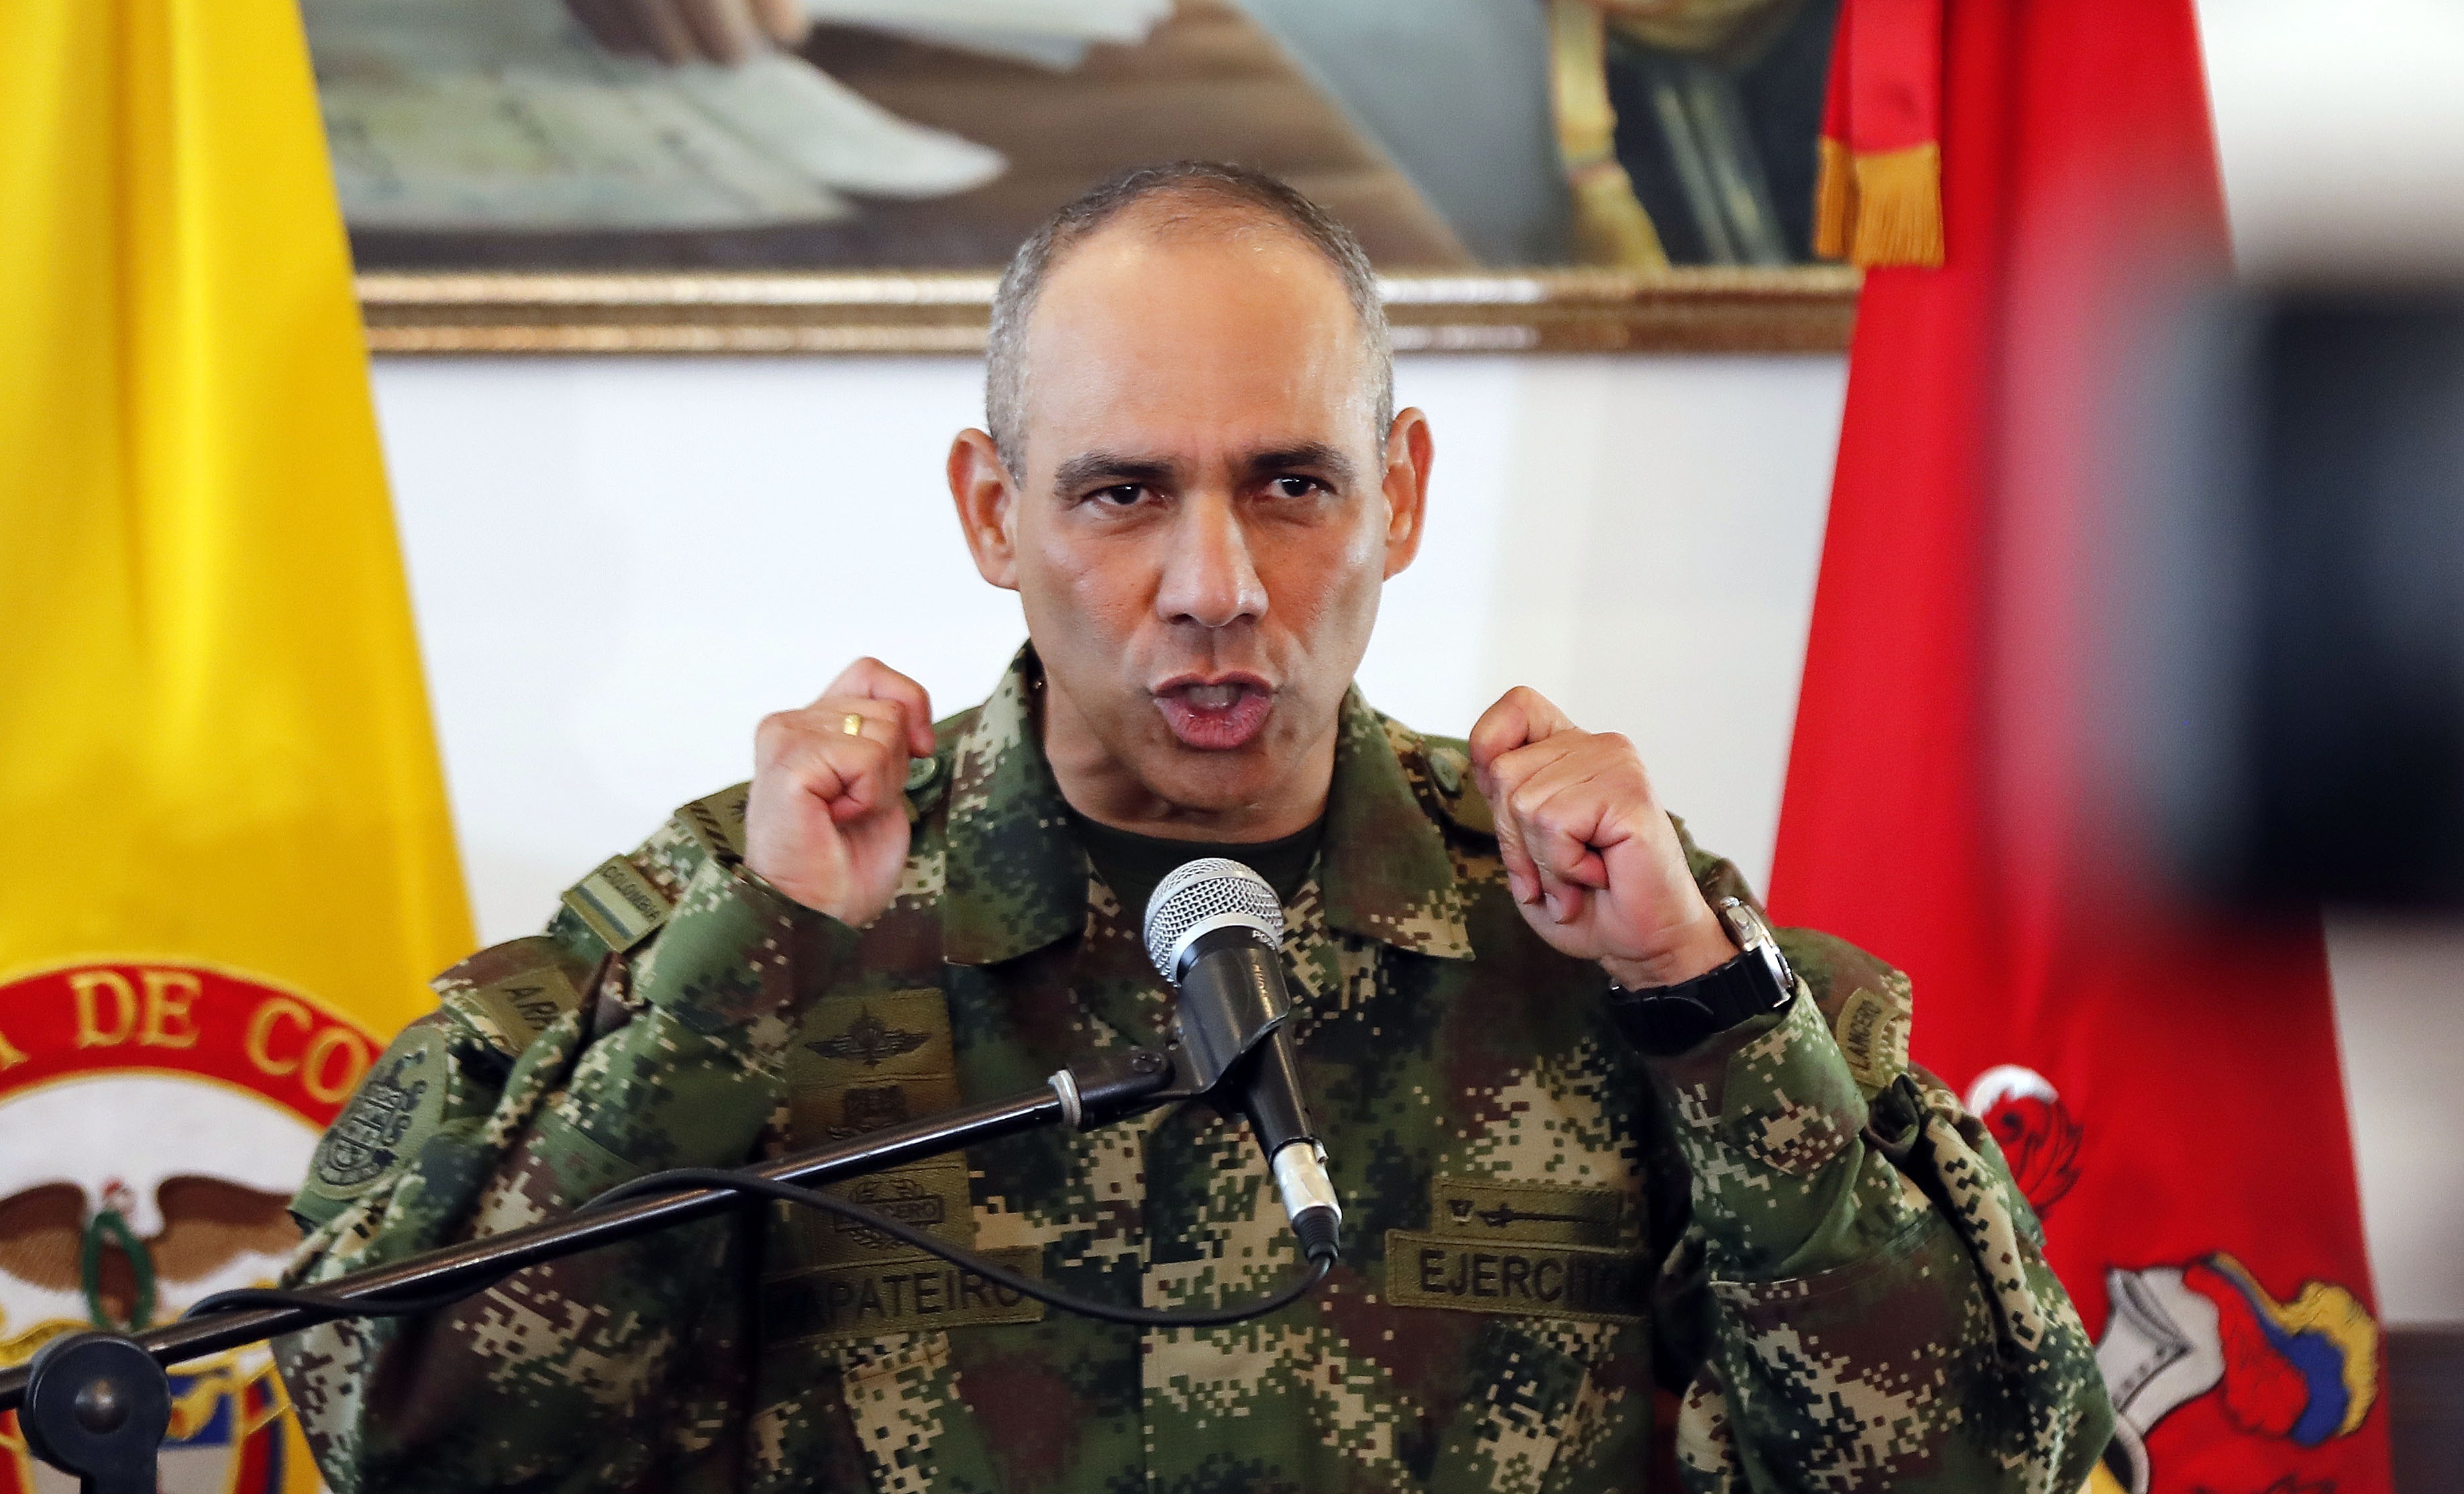 Eduardo Zapateiro: denuncian presiones y amenazas contra la jueza militar que lleva su caso por presunta corrupción